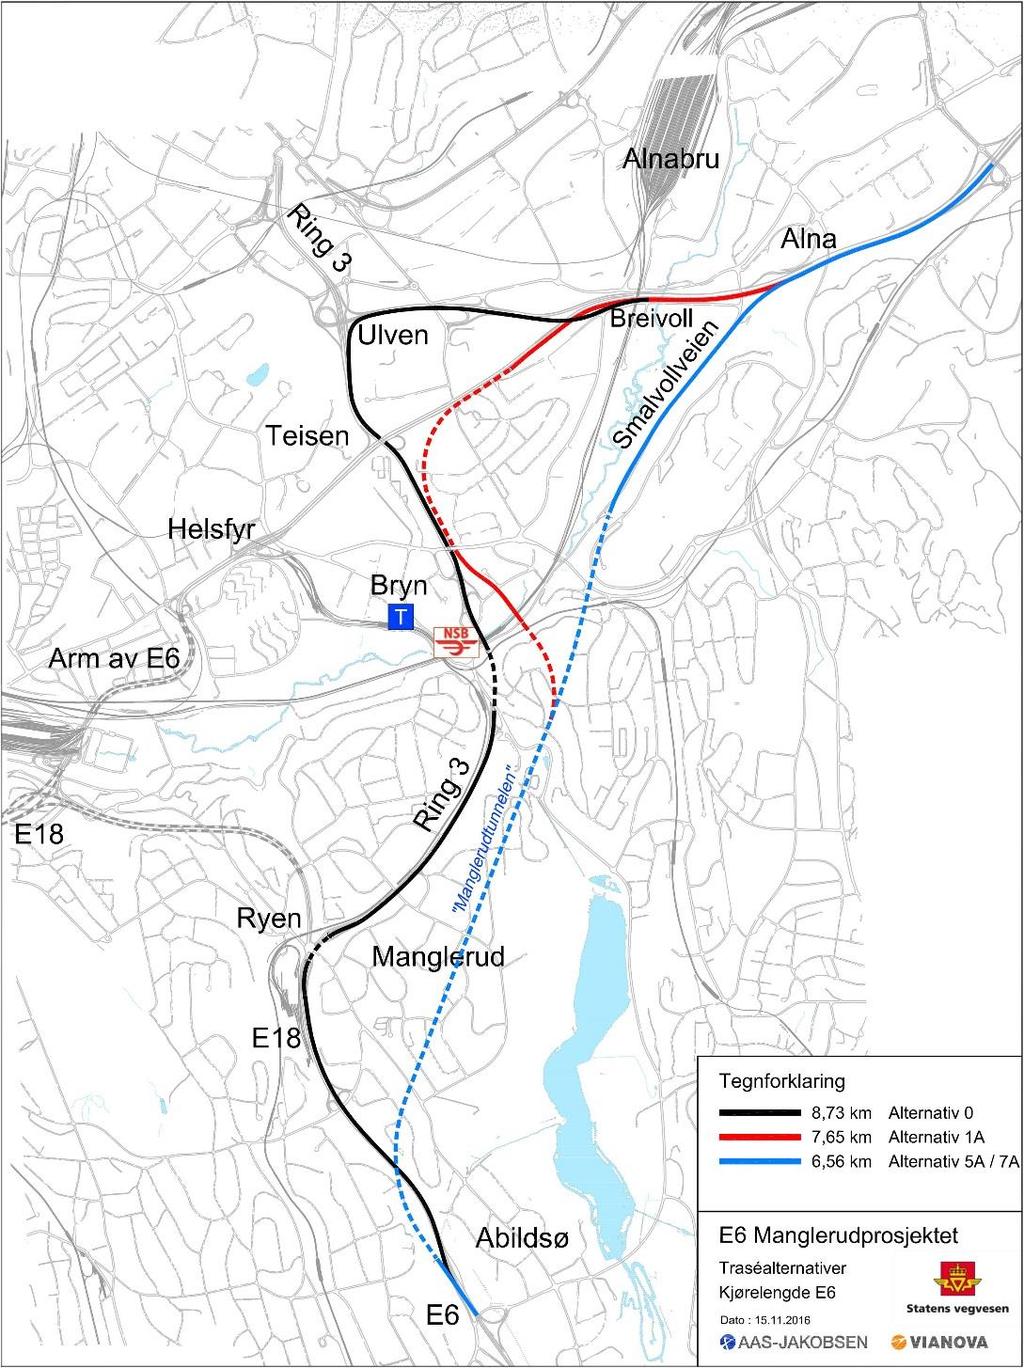 E6 Manglerudprosjektet Nytt tunnelalternativ for E6 Bryn-Alna langs Smalvollveien E6 blir 2,2 km kortere mellom Abildsø og Alna enn dagens trasé via Ulvensplitten. Flere varianter vurderes Kan bl.a. rendyrkes som E6- trasé uten kopling til Ring 3 på Bryn Konsekvenser for miljø og samfunn må utredes før vi kan velge alternativ Faktorer som vil bli tillagt vekt ved valg av alternativ er bl.